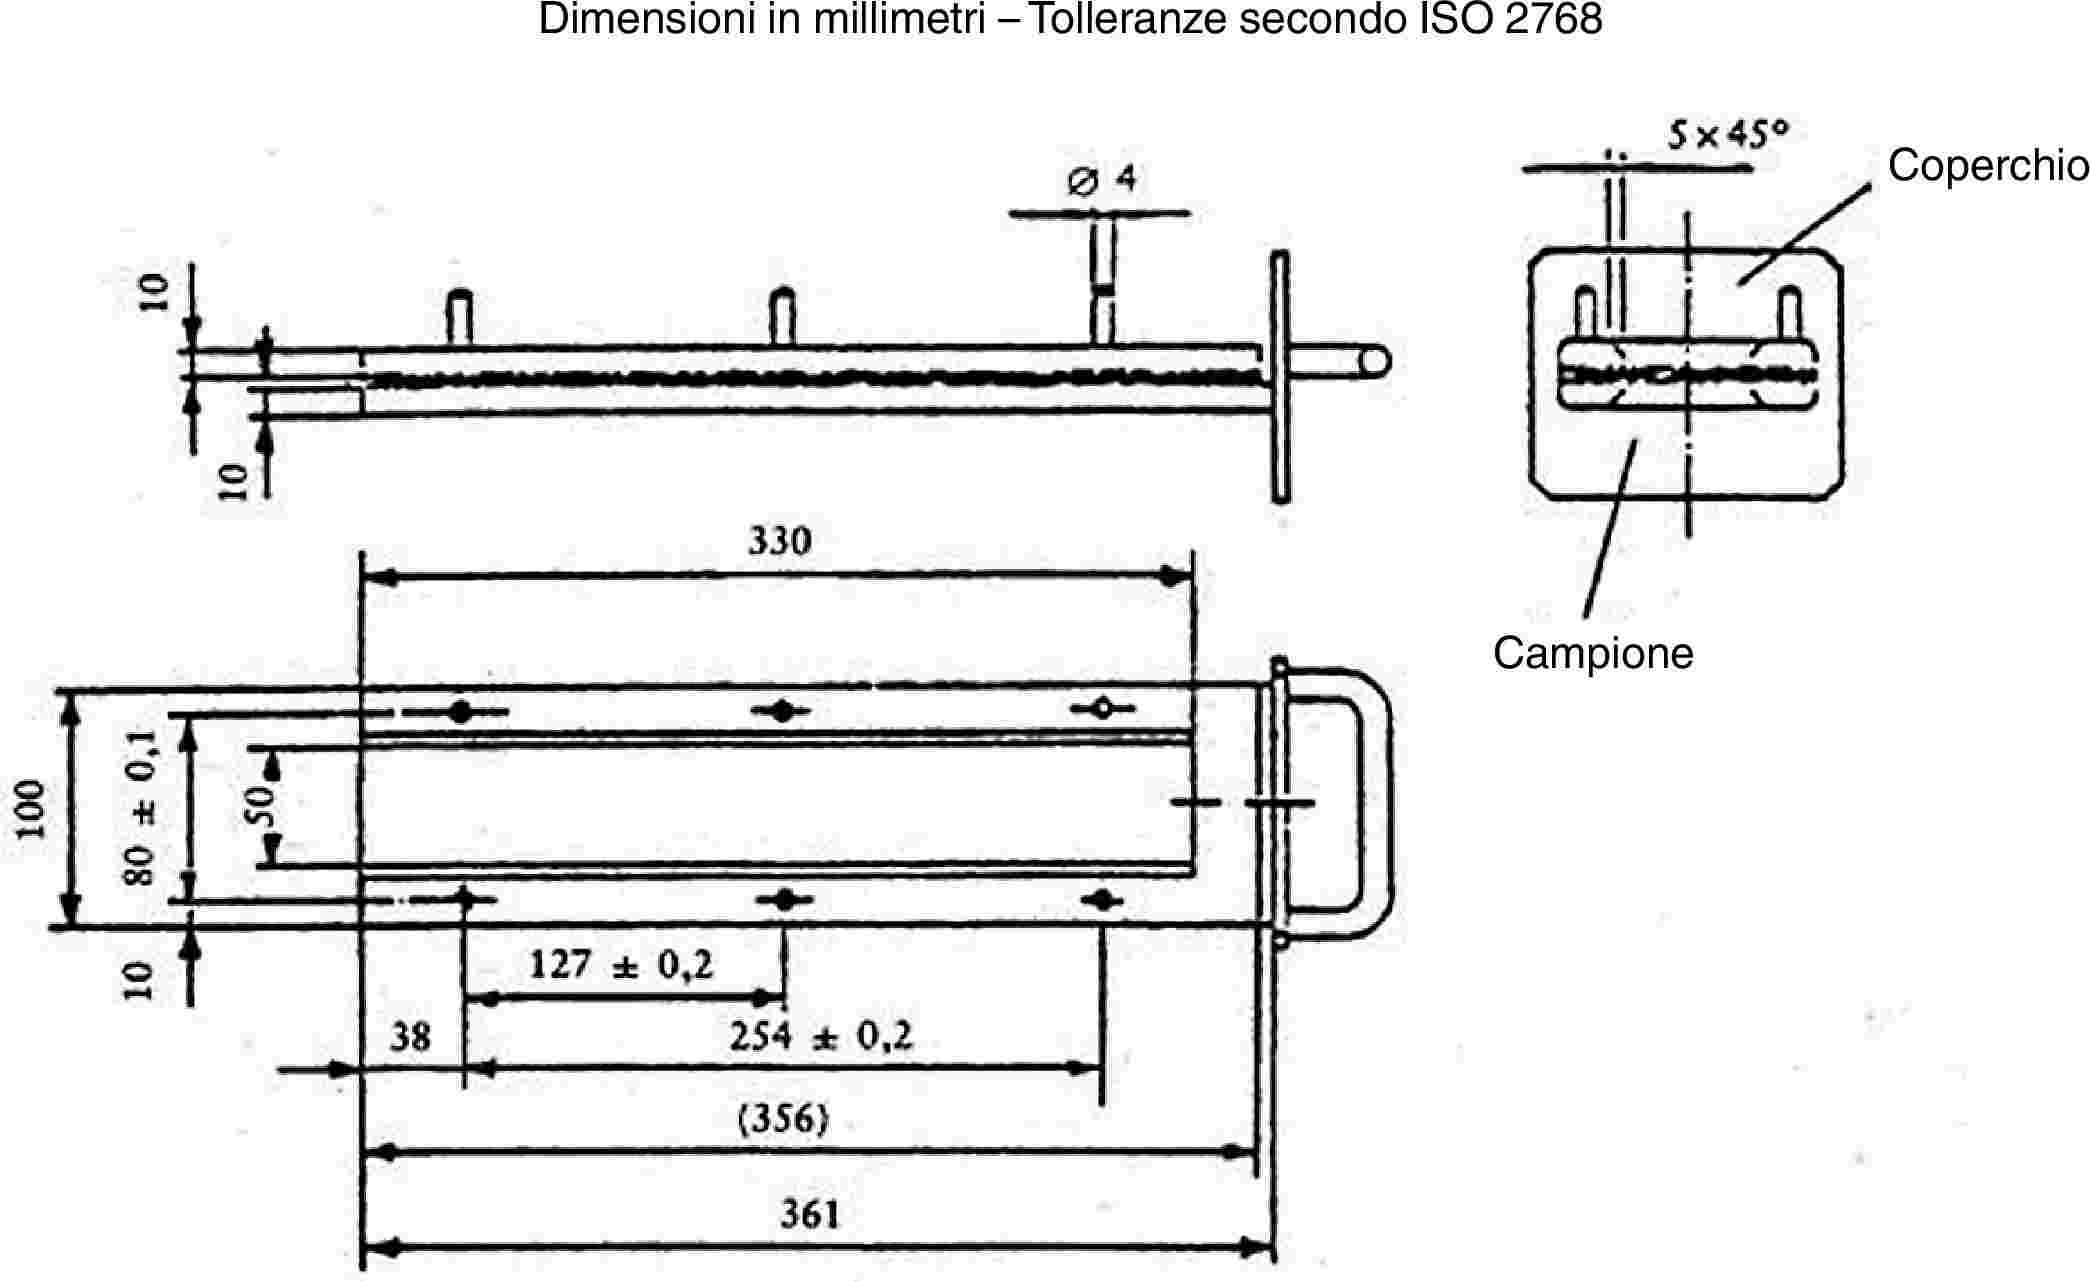 Dimensioni in millimetri – Tolleranze secondo ISO 2768CoperchioCampione